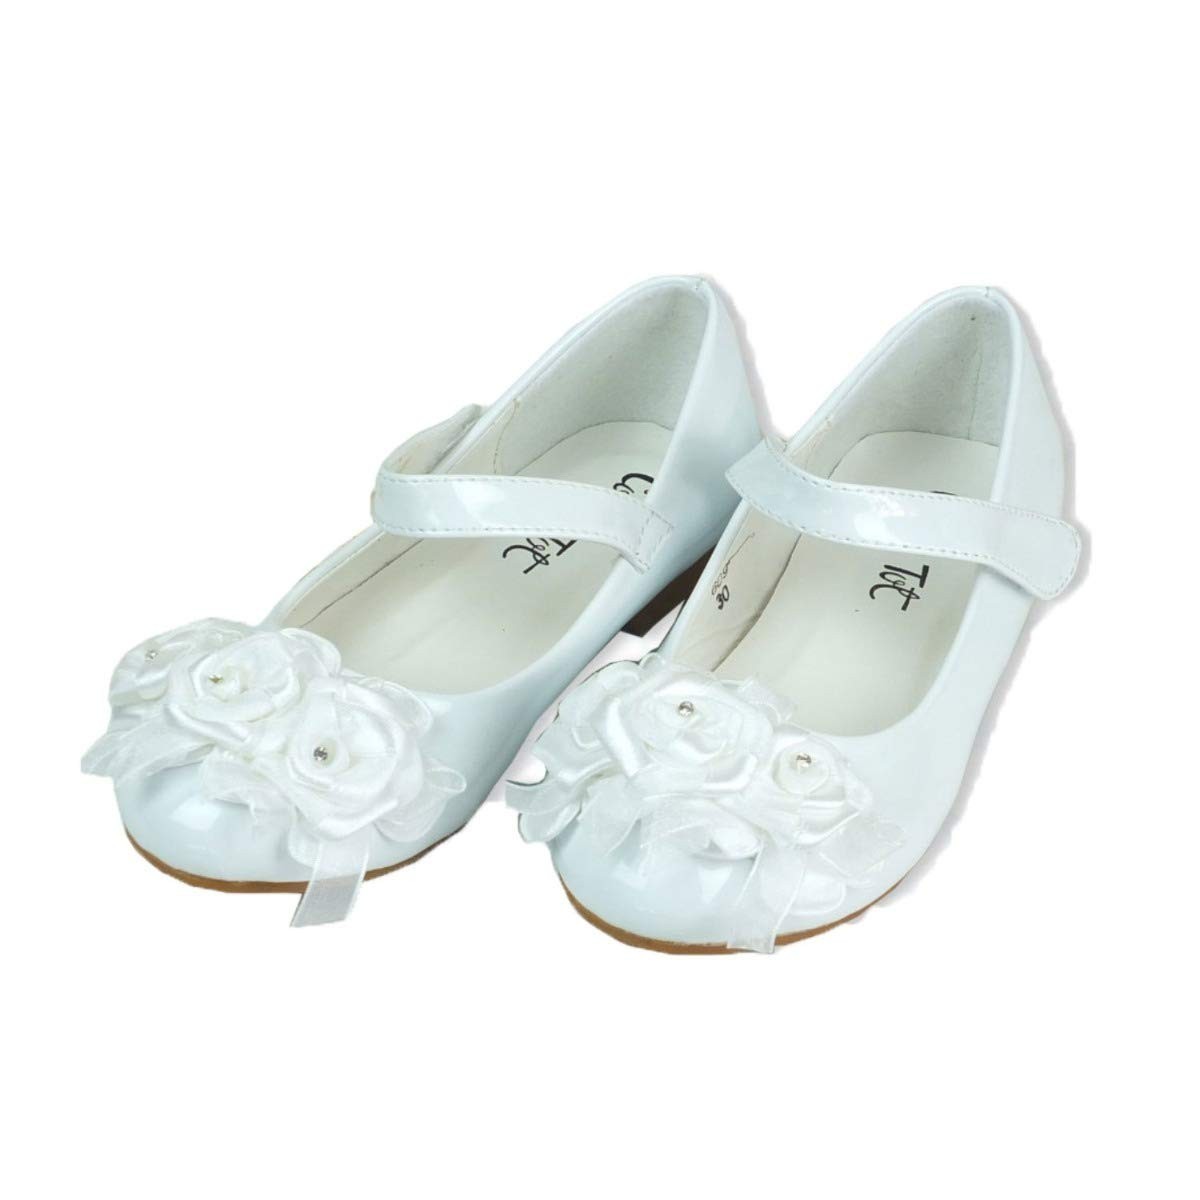 Chaussures de Cérémonie Vernies Mary Jane pour Filles d'Honneur - Blanc